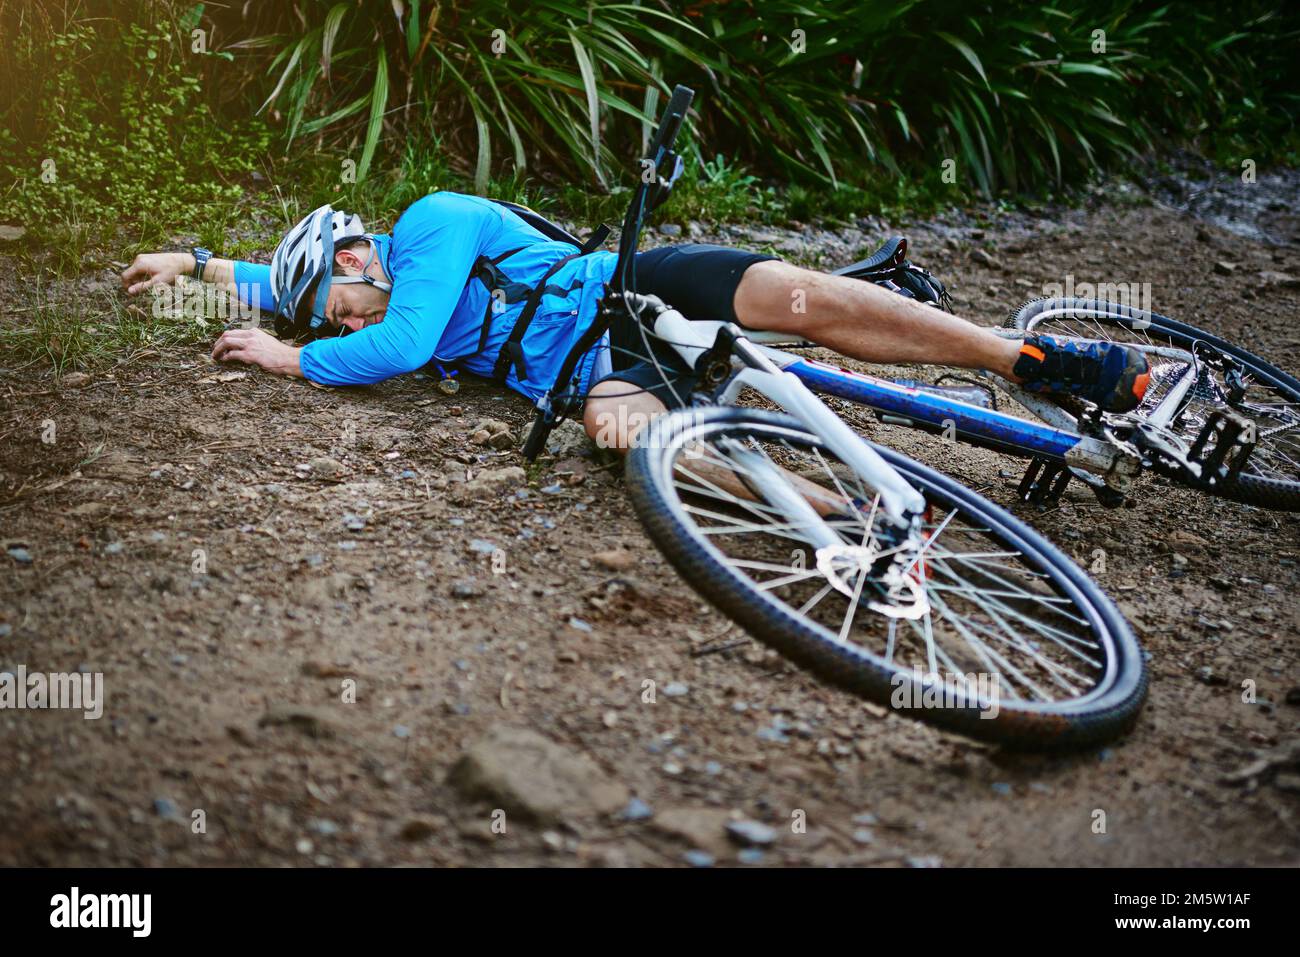 Des accidents se produisent... un cycliste qui a pris une chute sur son vélo de montagne. Banque D'Images